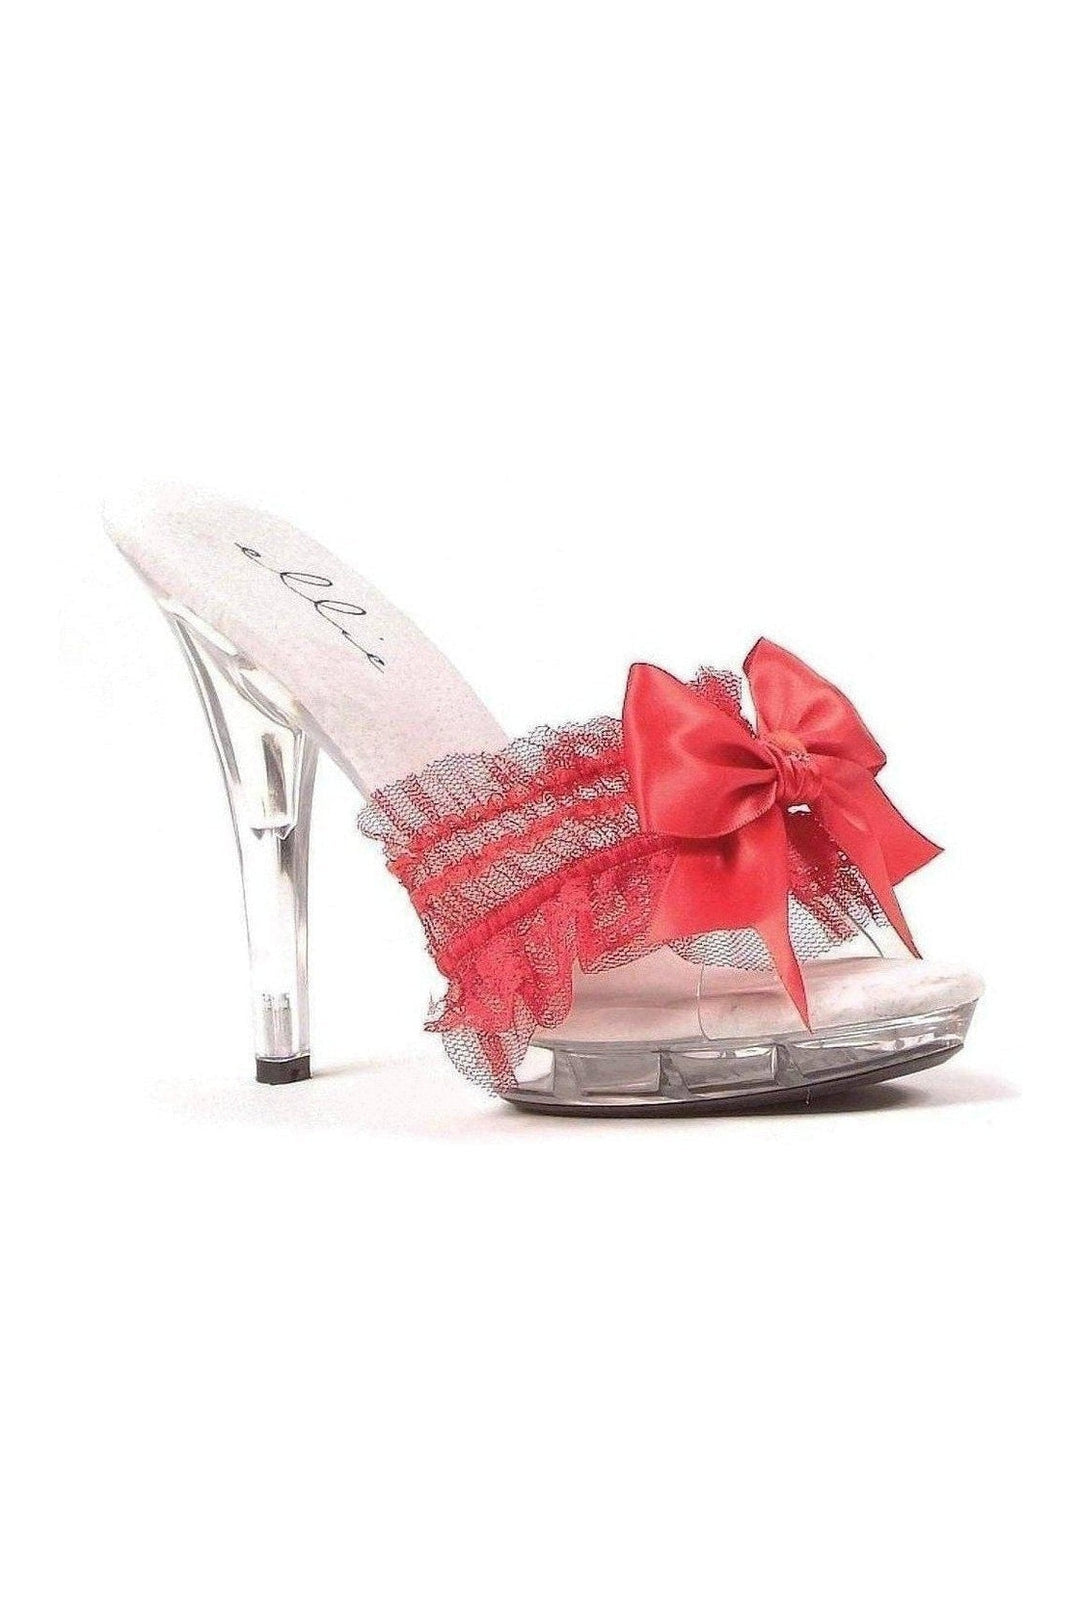 M-CUTIE Platform Slide | Red Patent-Ellie Shoes-SEXYSHOES.COM